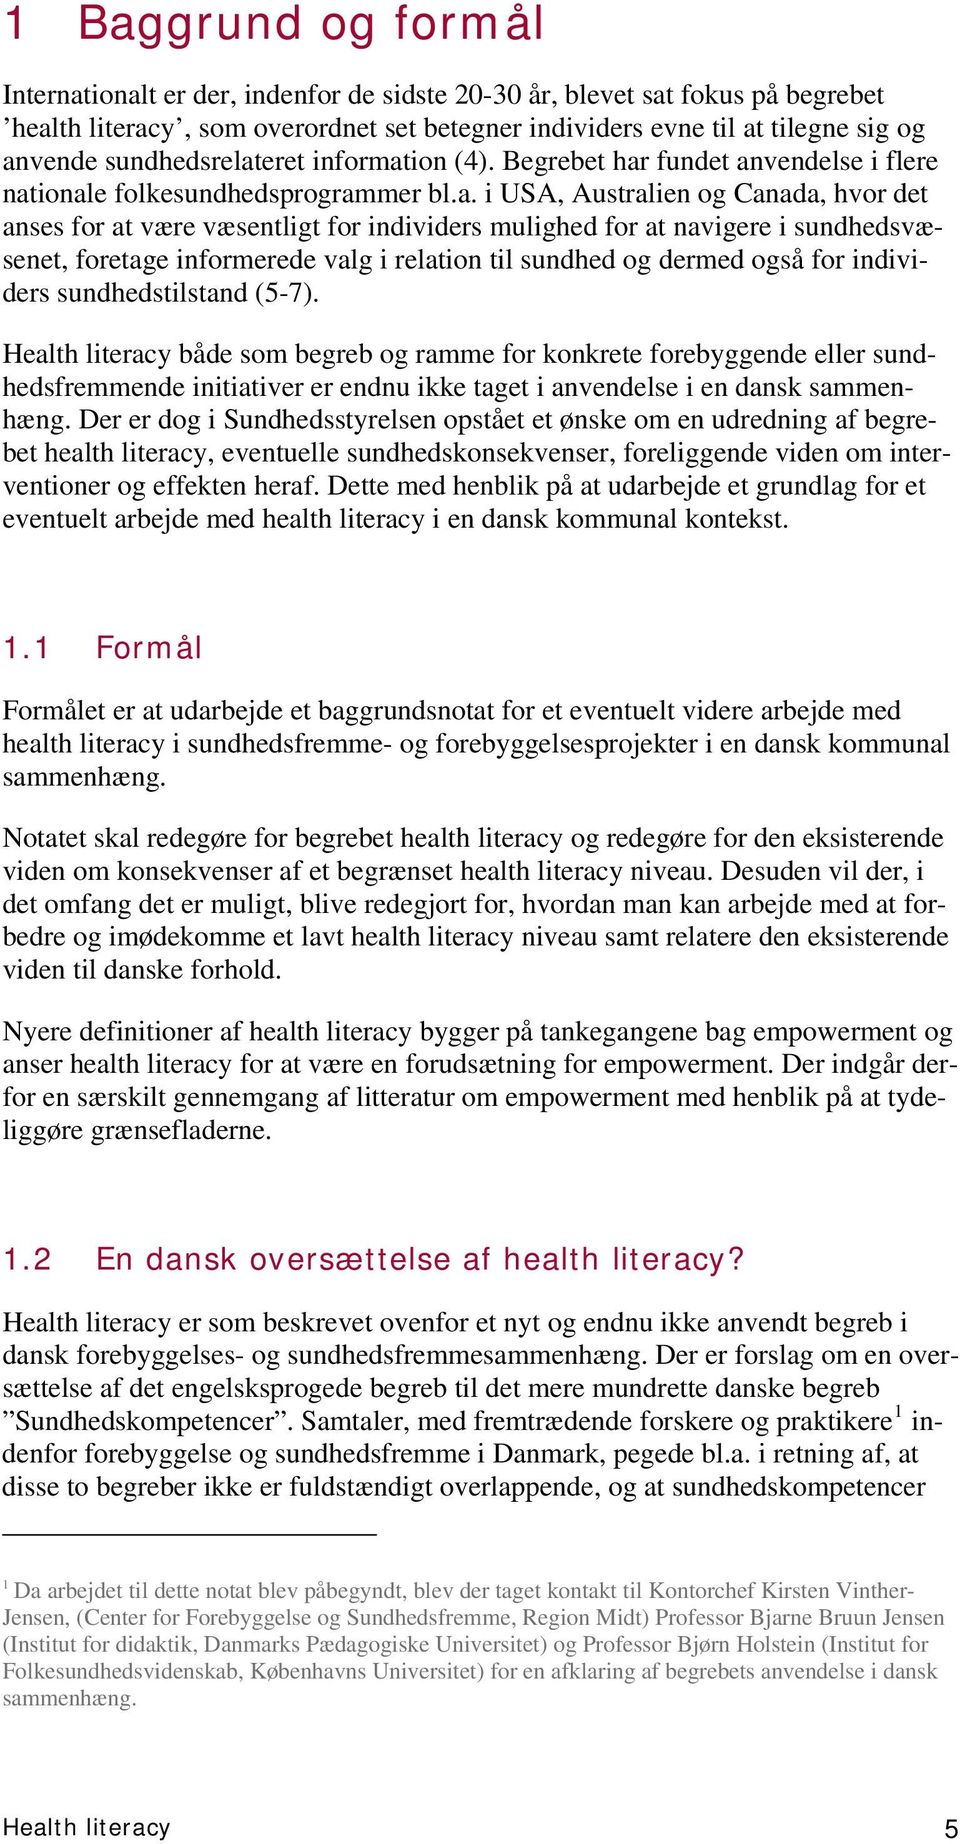 health literacy Begrebet, konsekvenser og mulige interventioner ...